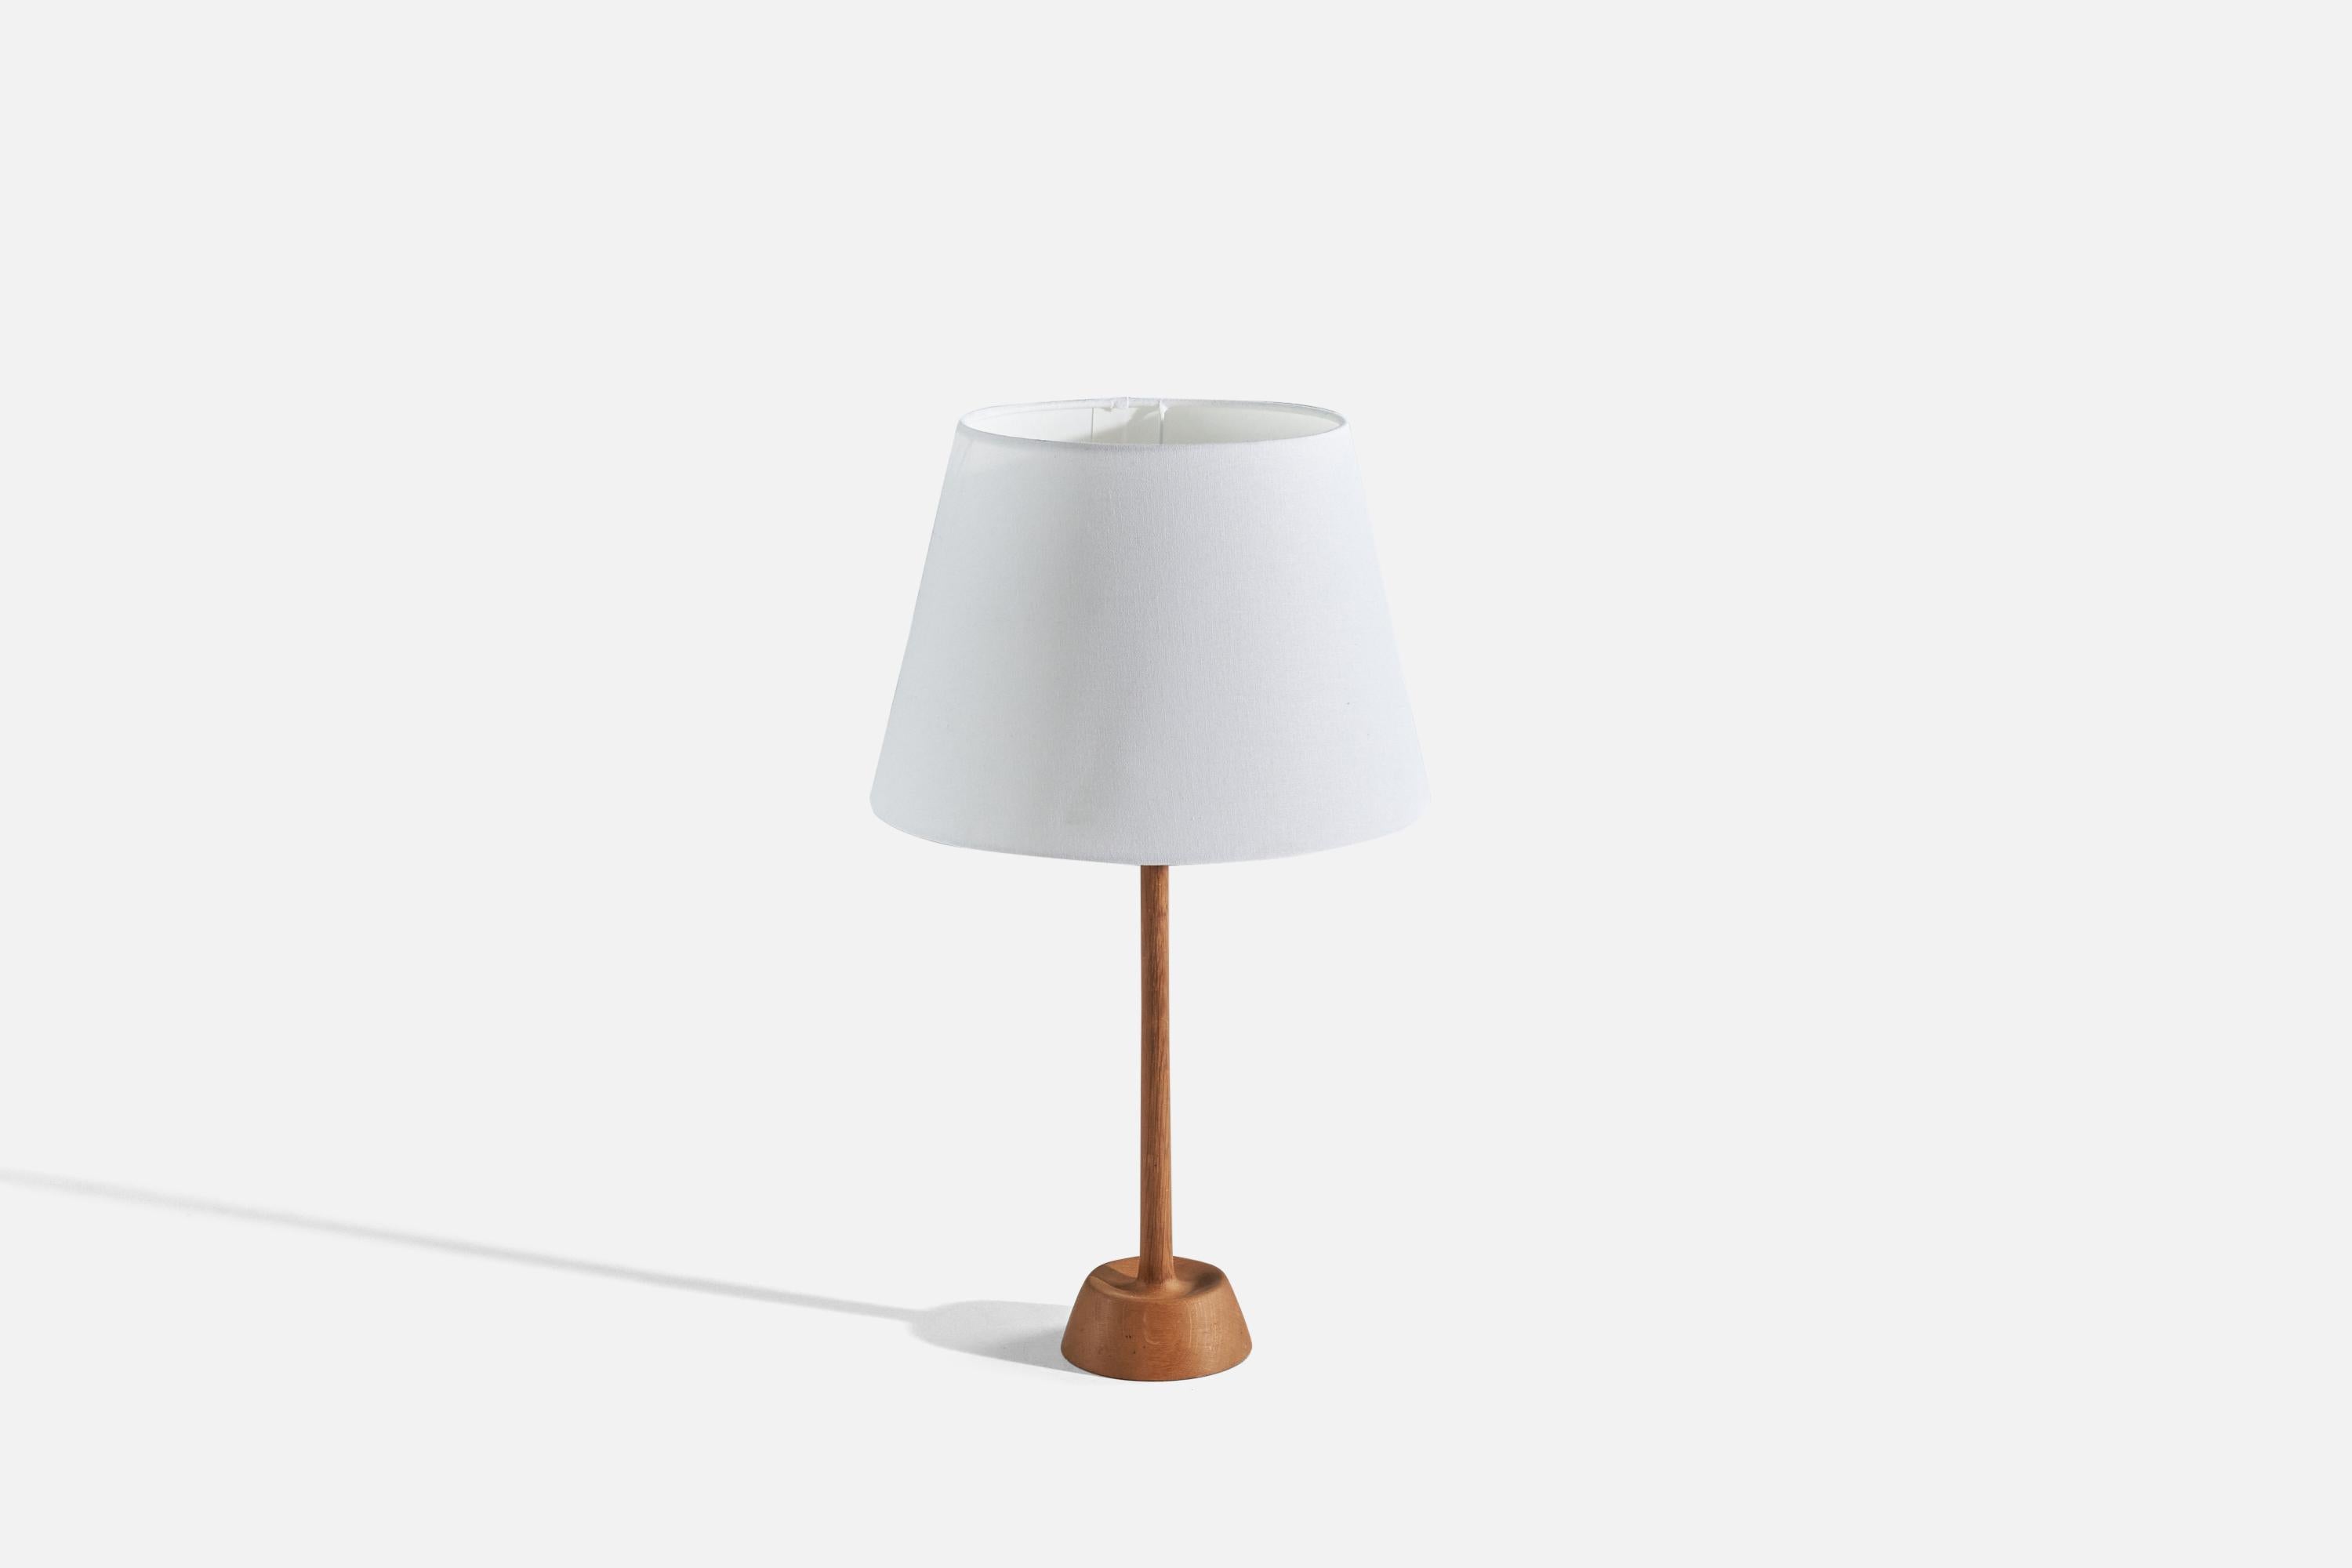 Tischleuchte aus Eiche und Stoff, entworfen und hergestellt von Uno Kristiansson, Schweden, 1970er Jahre. 

Der Lampenschirm kann auf Anfrage mitgeliefert werden.
 
Abmessungen der Lampe (Zoll) : 18 x 4,87 x 4,87 (Höhe x Breite x Tiefe)
Abmessungen